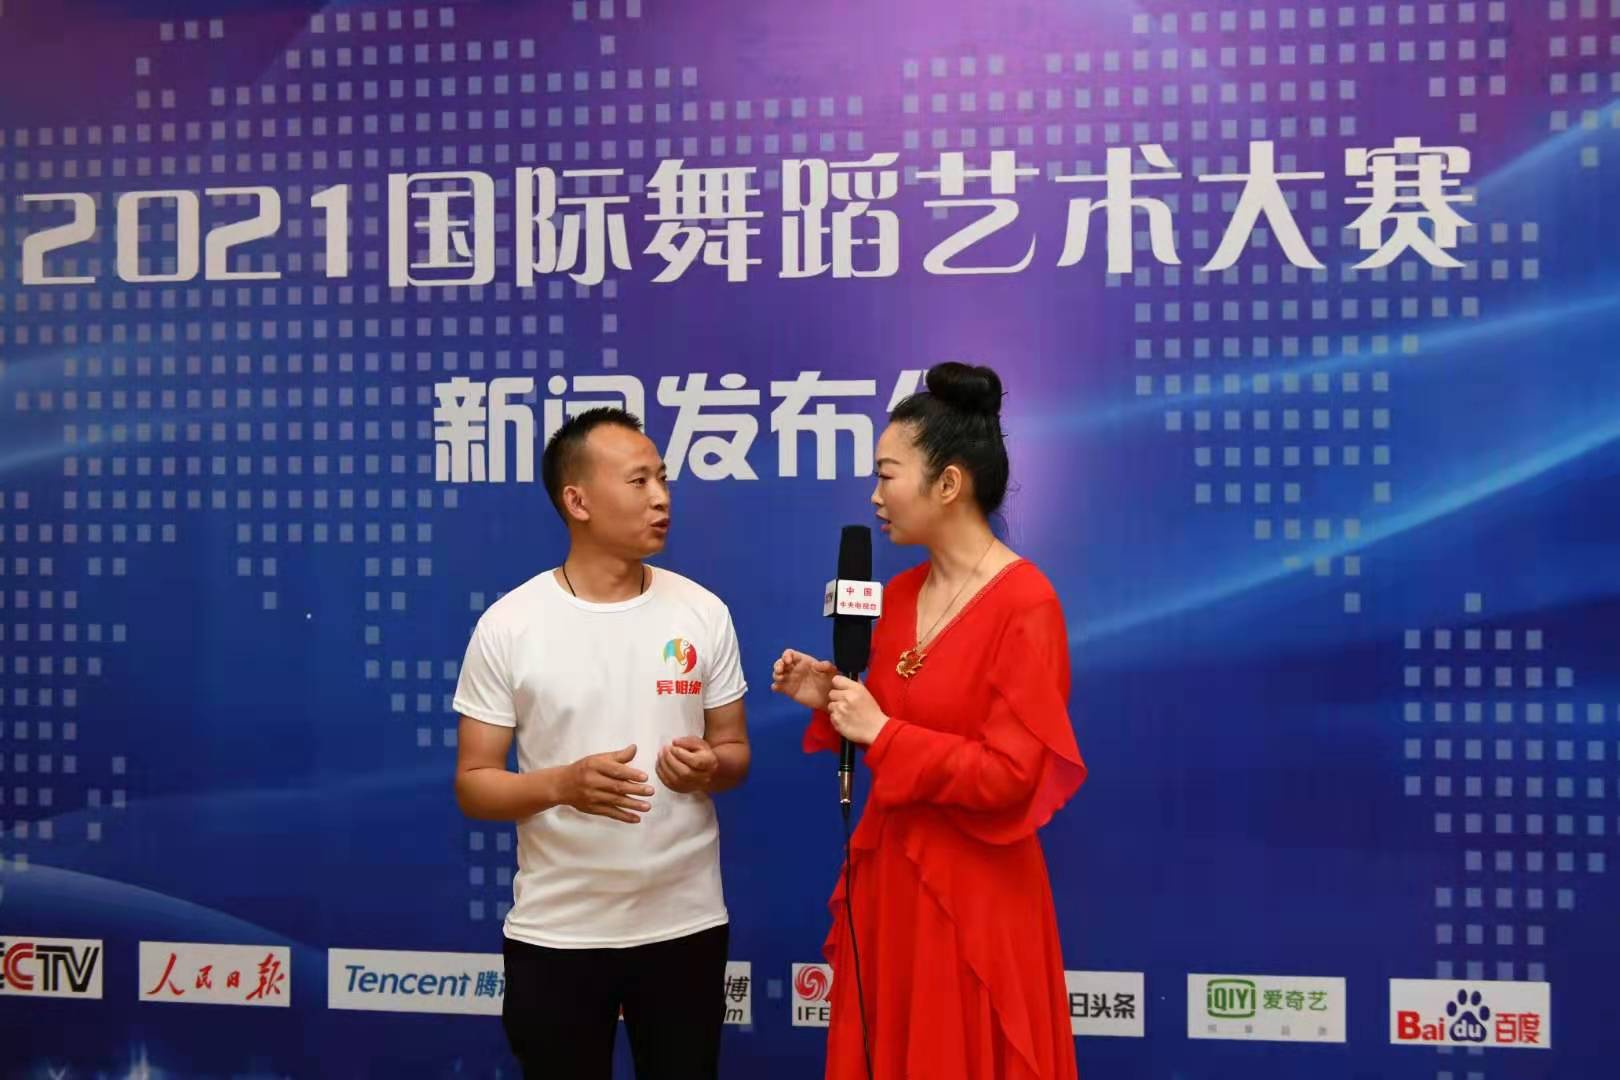 2021国际舞蹈艺术大赛新闻发布会在云南昆明举行